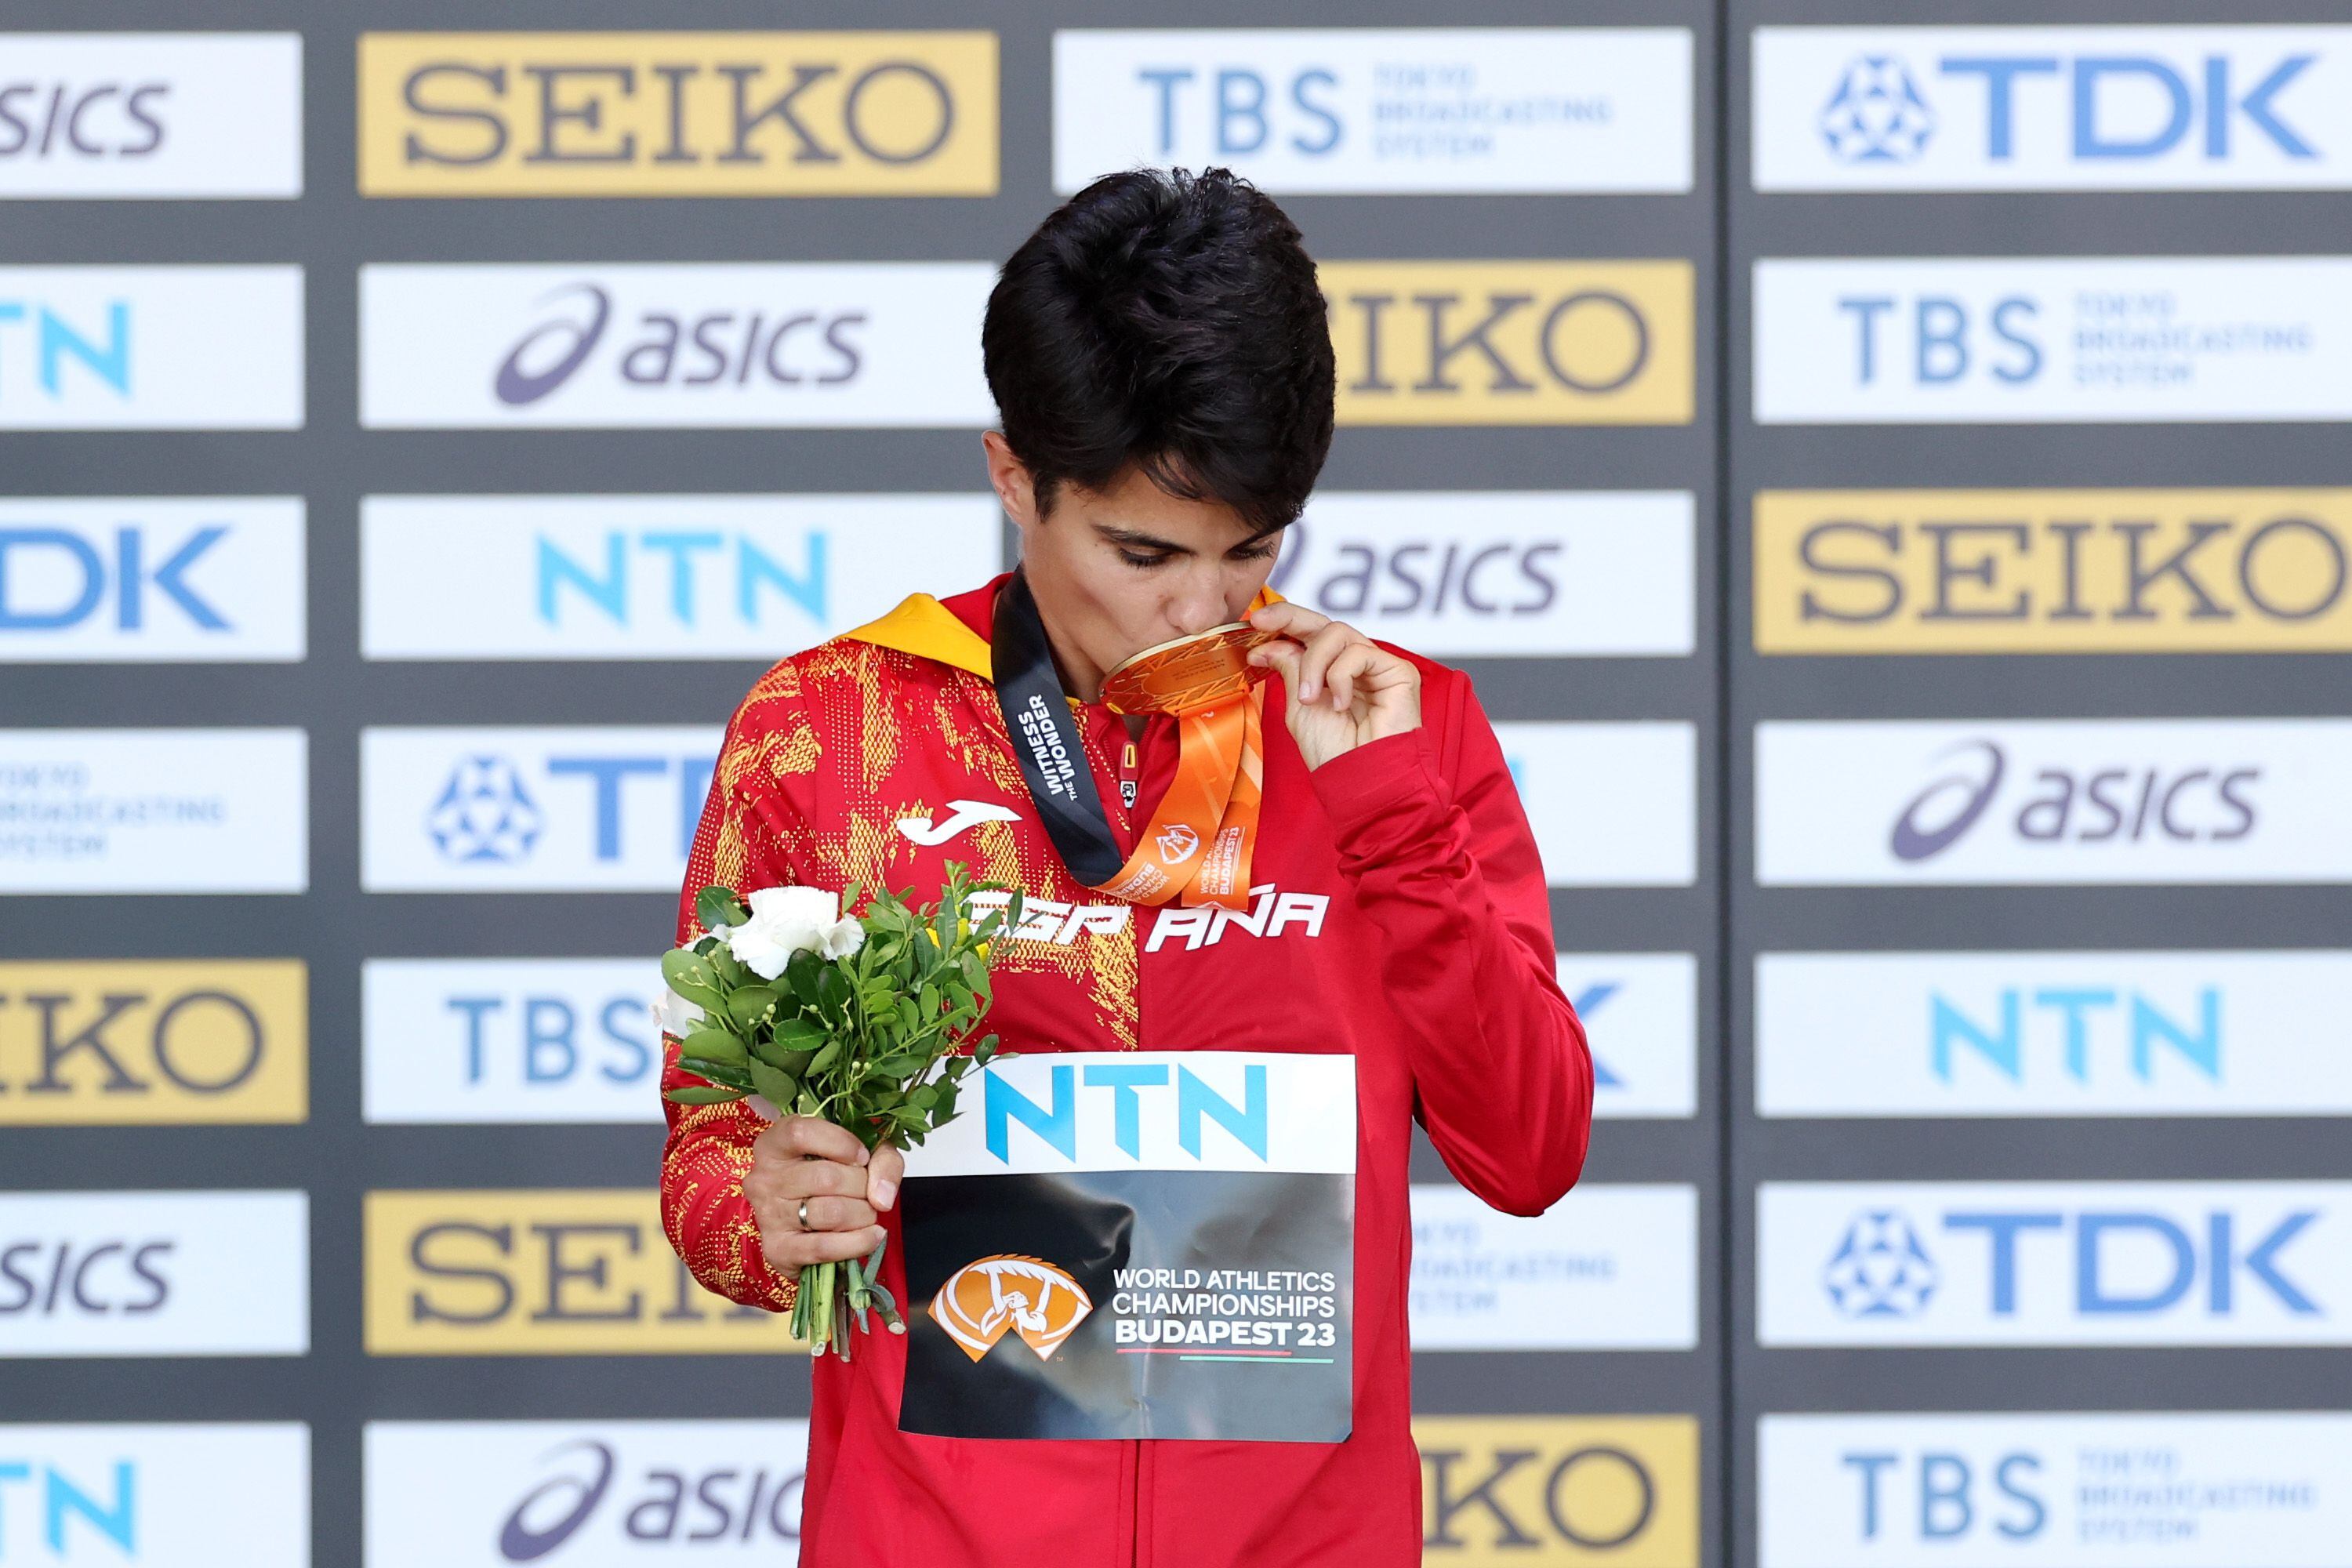 María Pérez posa con su medalla de oro, este jueves en Budapest, tras ganar la carrera.